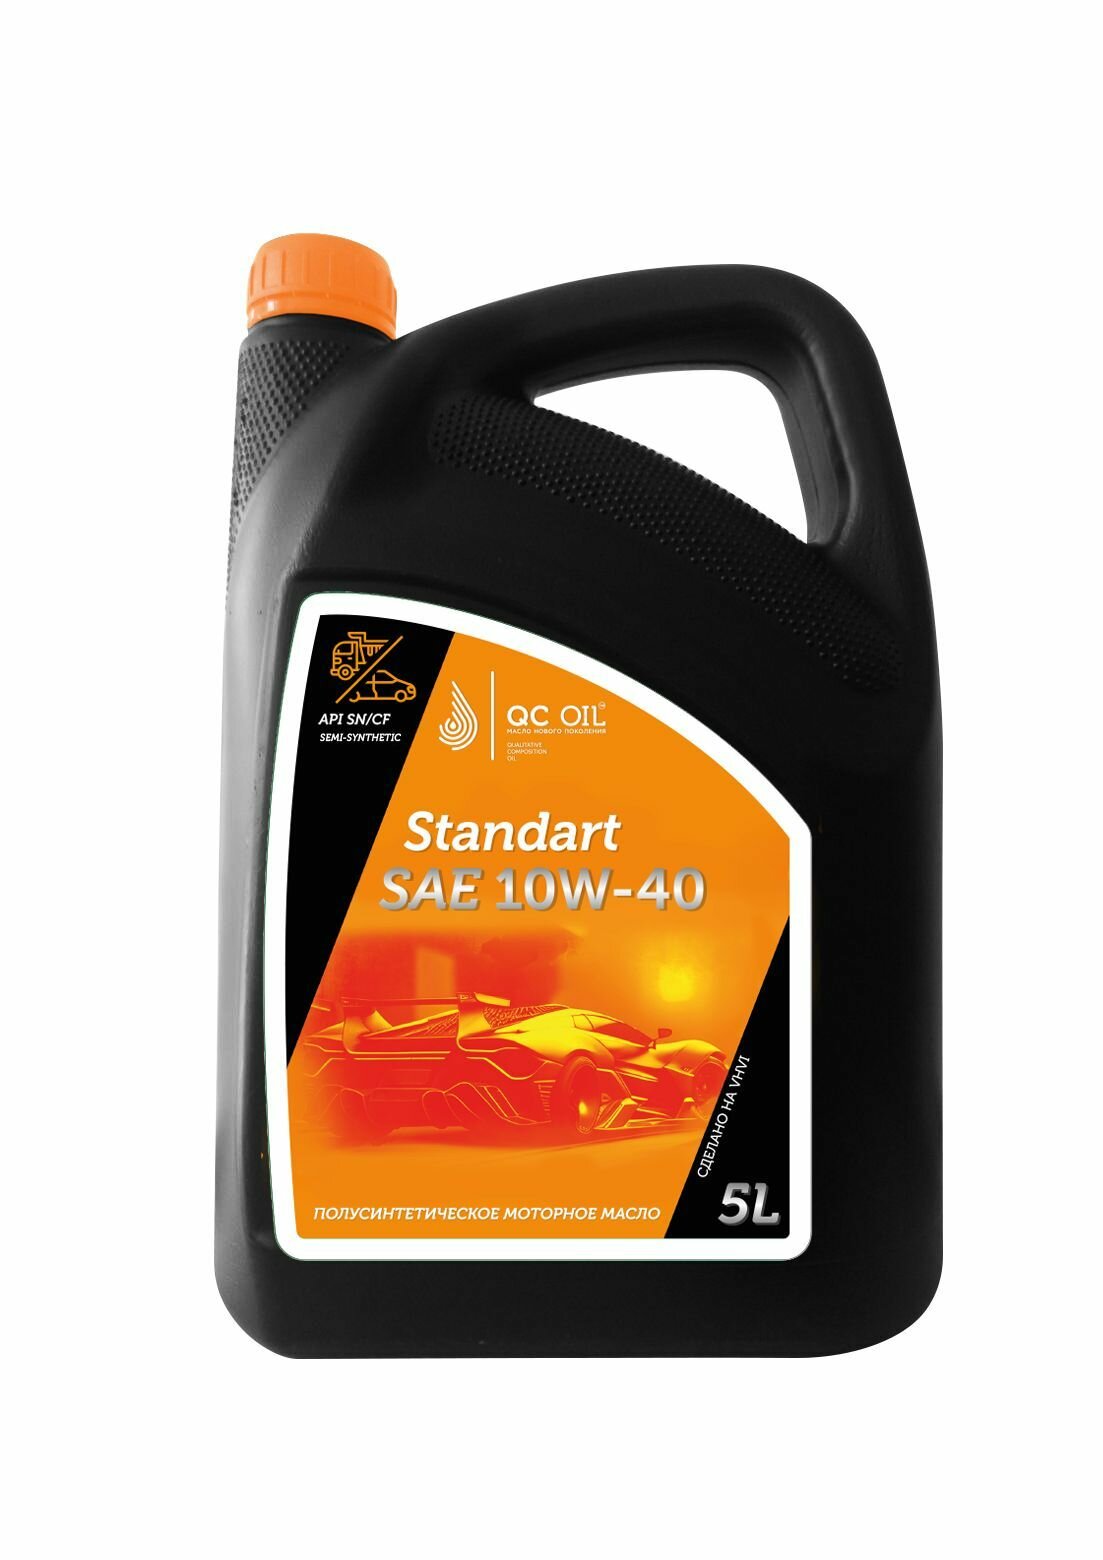 Моторное масло SAE 10W-40 SN/CF QC OIL Standart полусинтетическое, канистра 5л